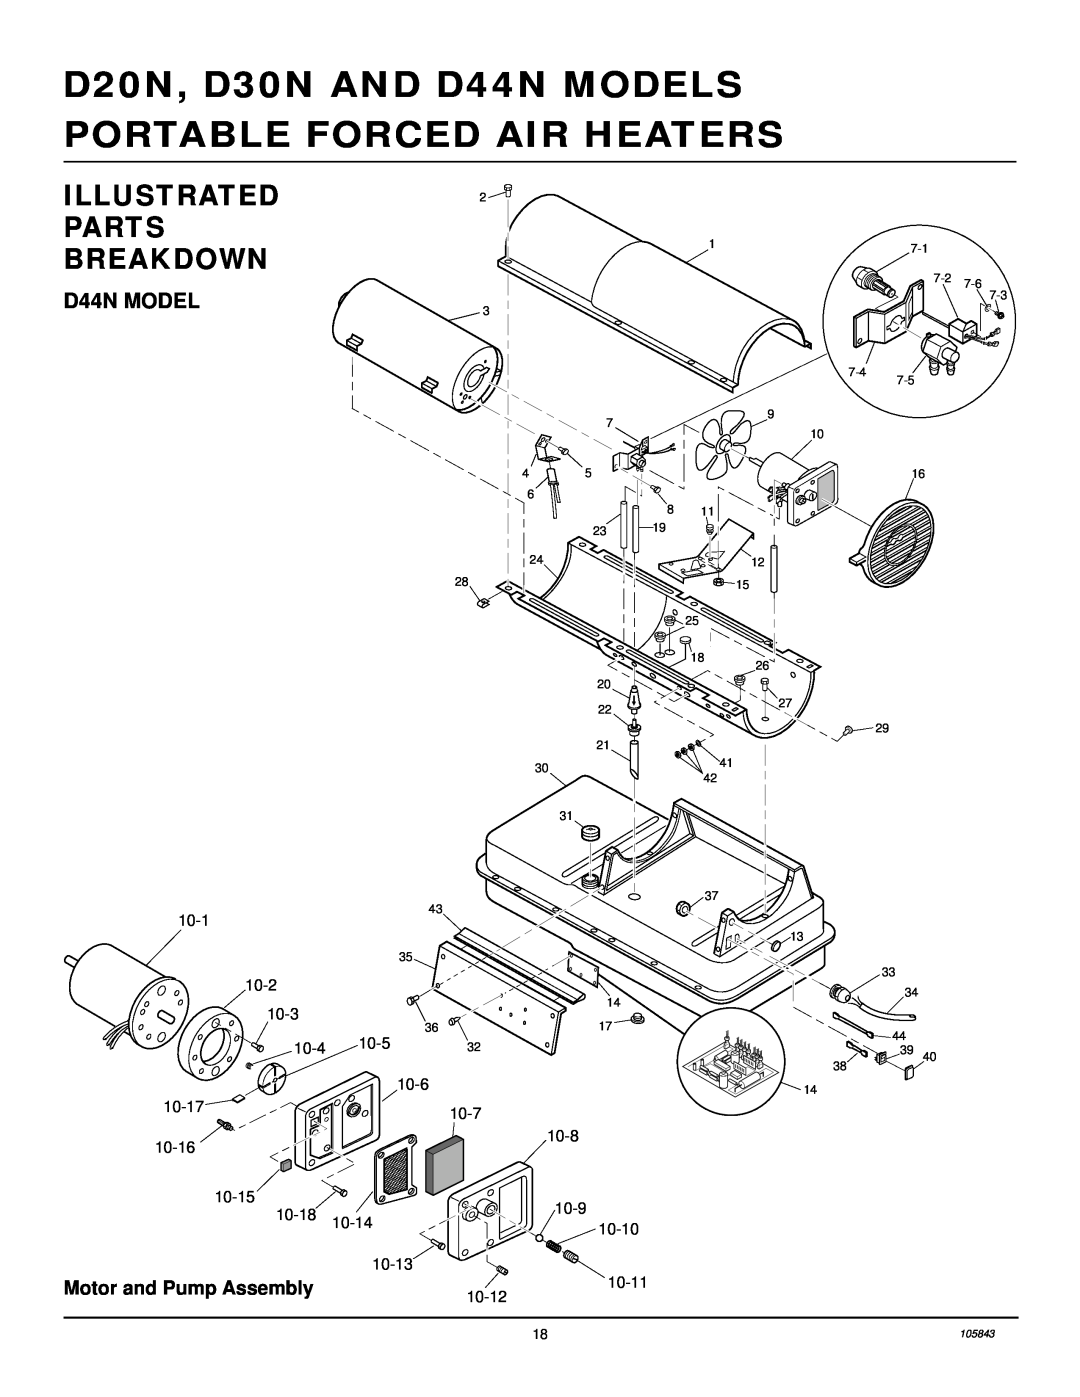 Desa D20N, D30N owner manual D44N MODEL, Illustrated Parts Breakdown 